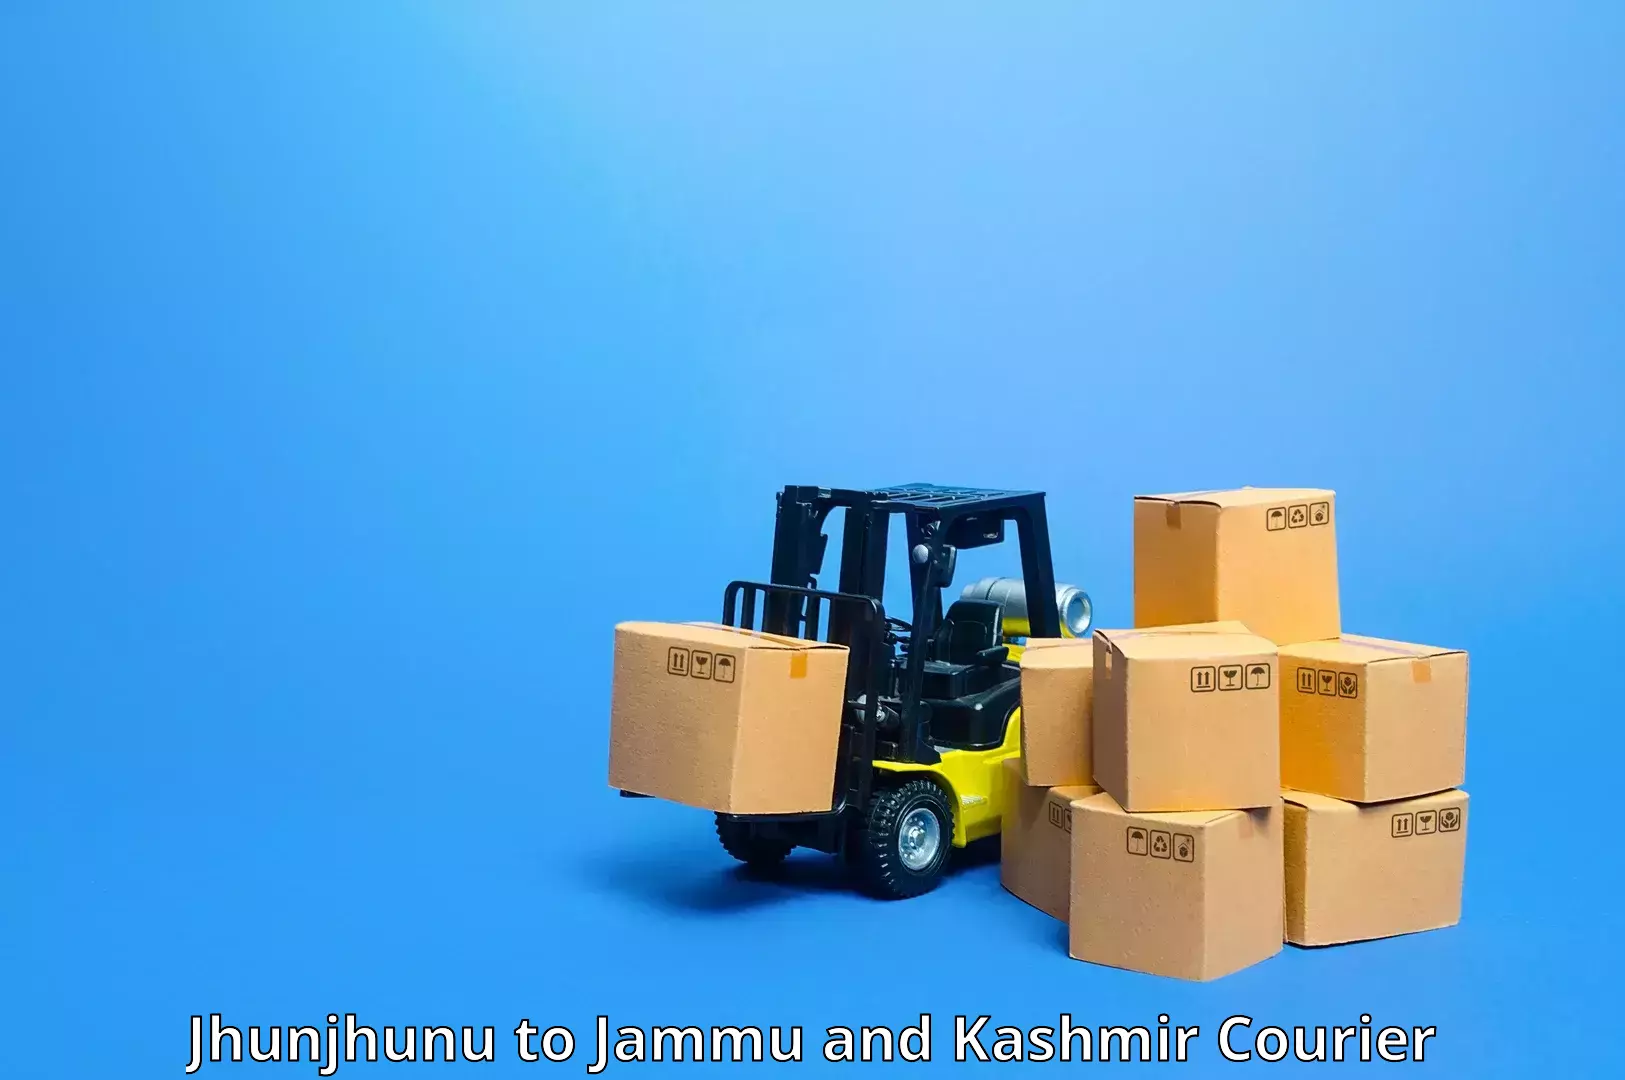 Global logistics network Jhunjhunu to Kathua